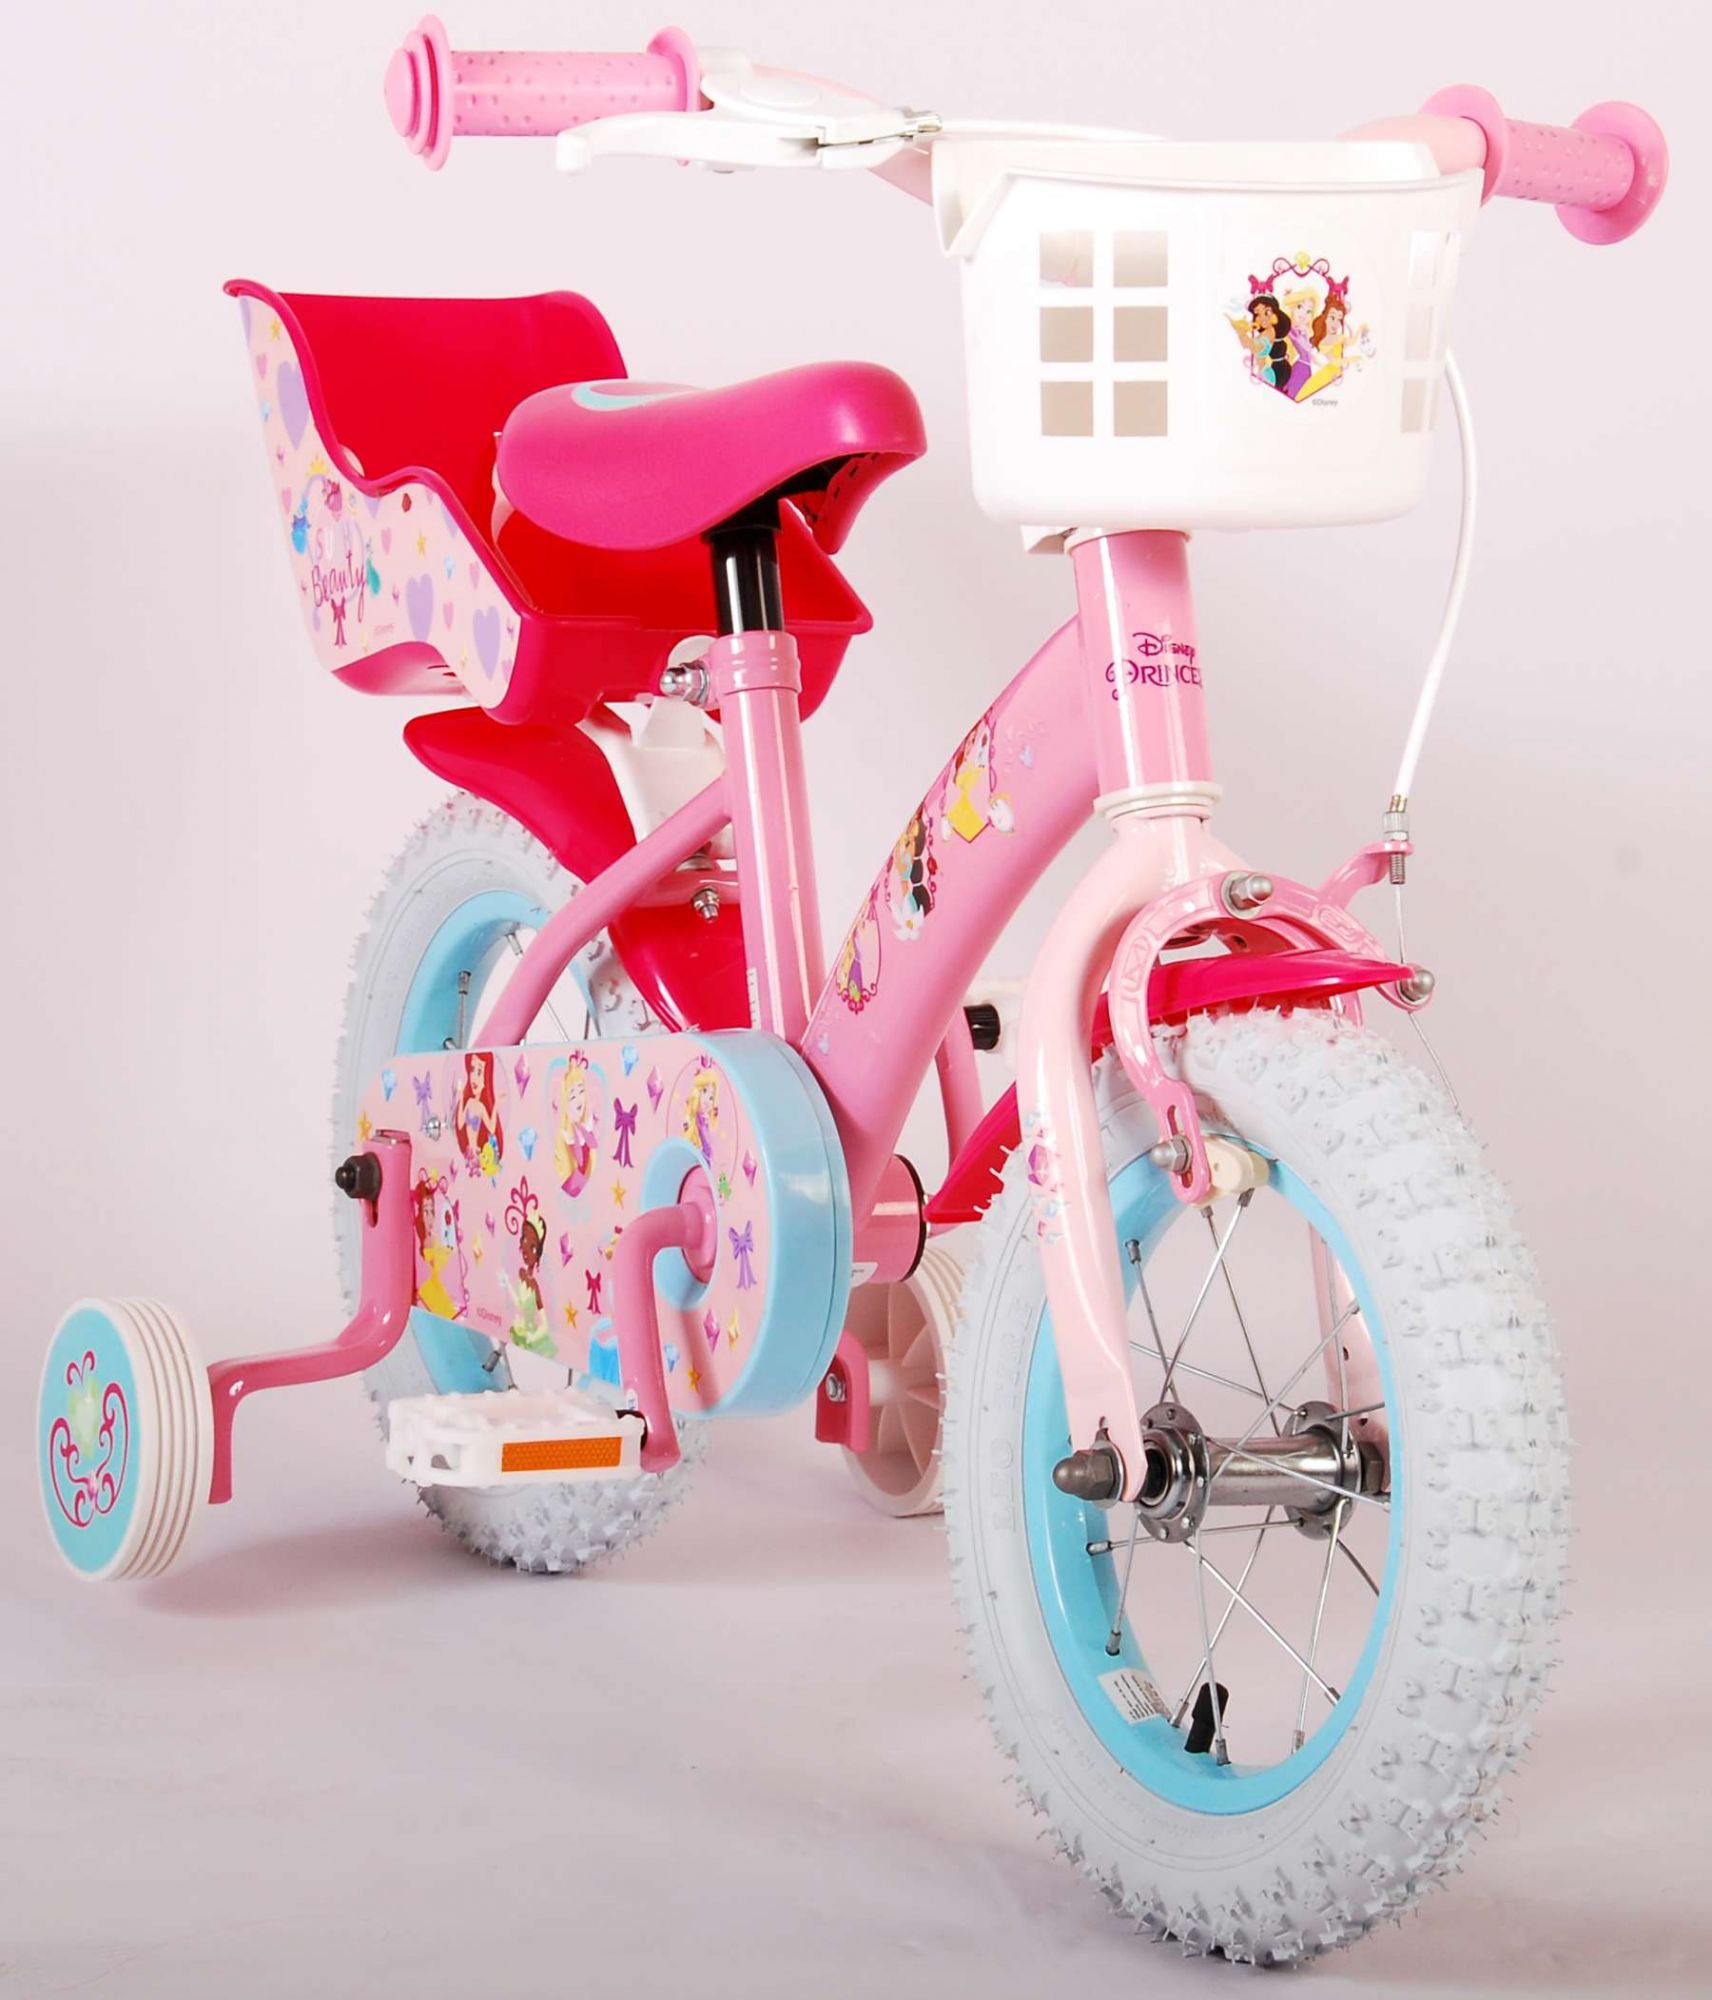 Puppensitz Disney Princess für Fahrräder ab 10 bis 20 Zoll 